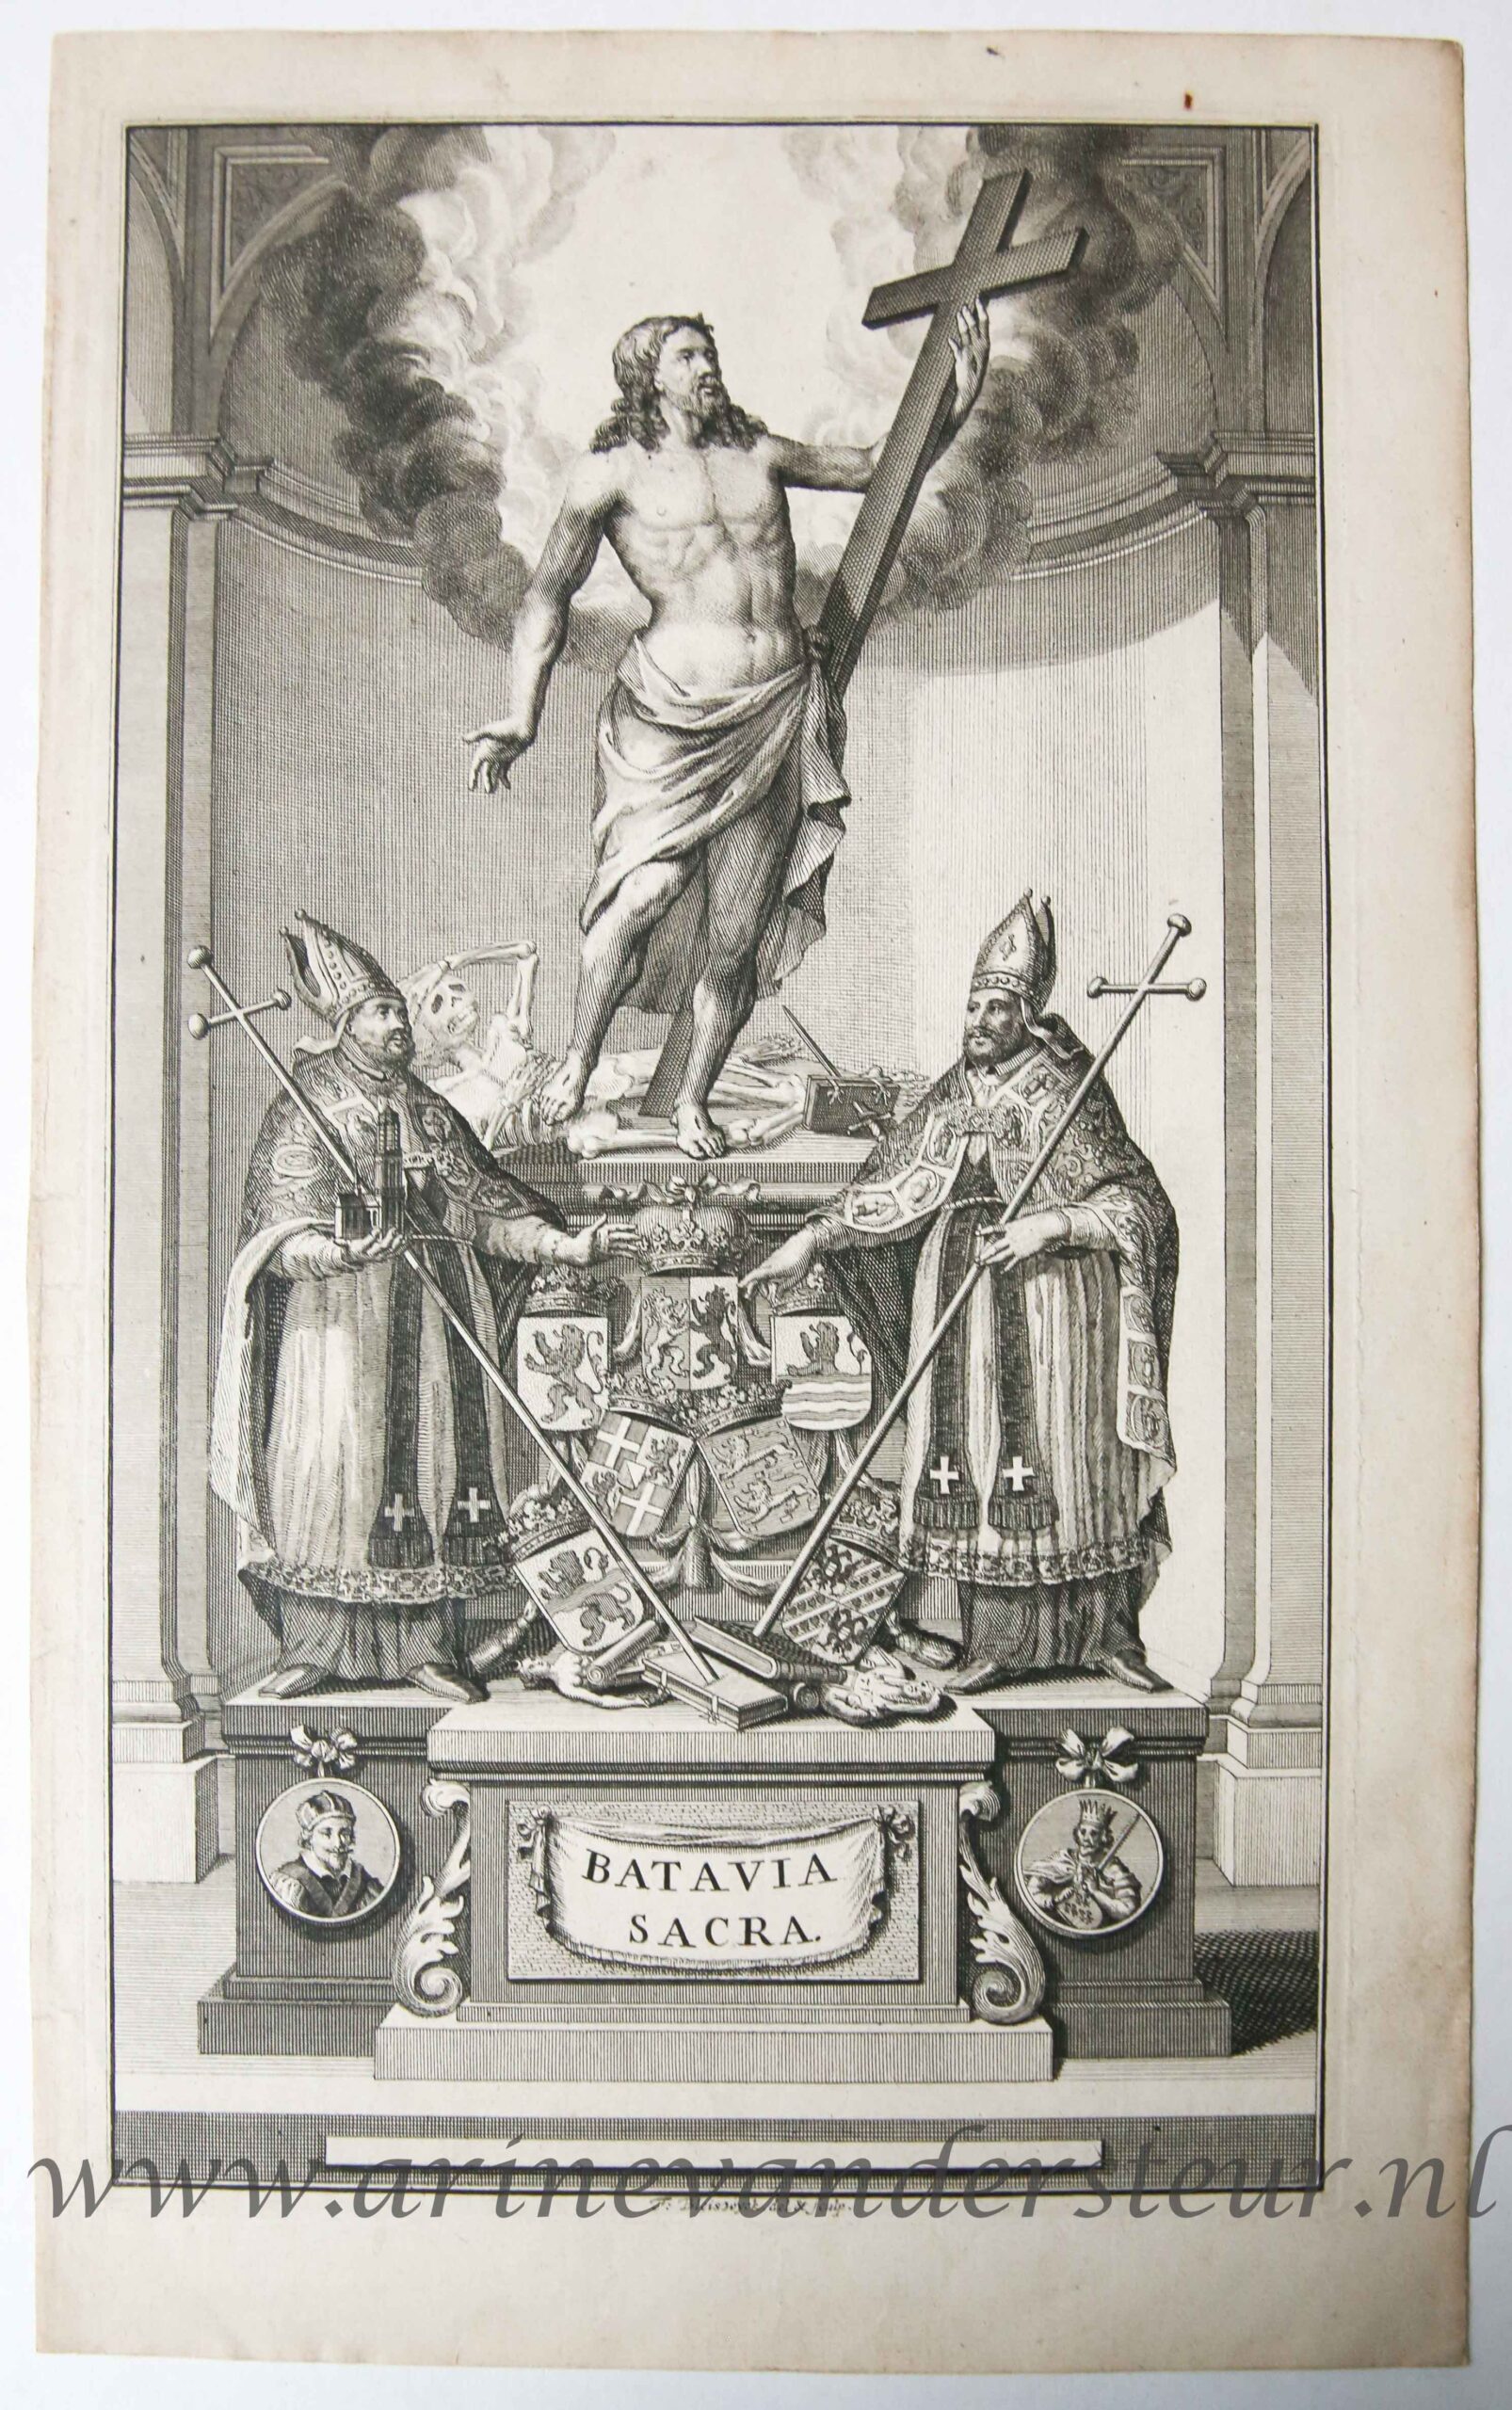 [Antique title page, 1714] BATAVIA SACRA, published 1714, 1 p.